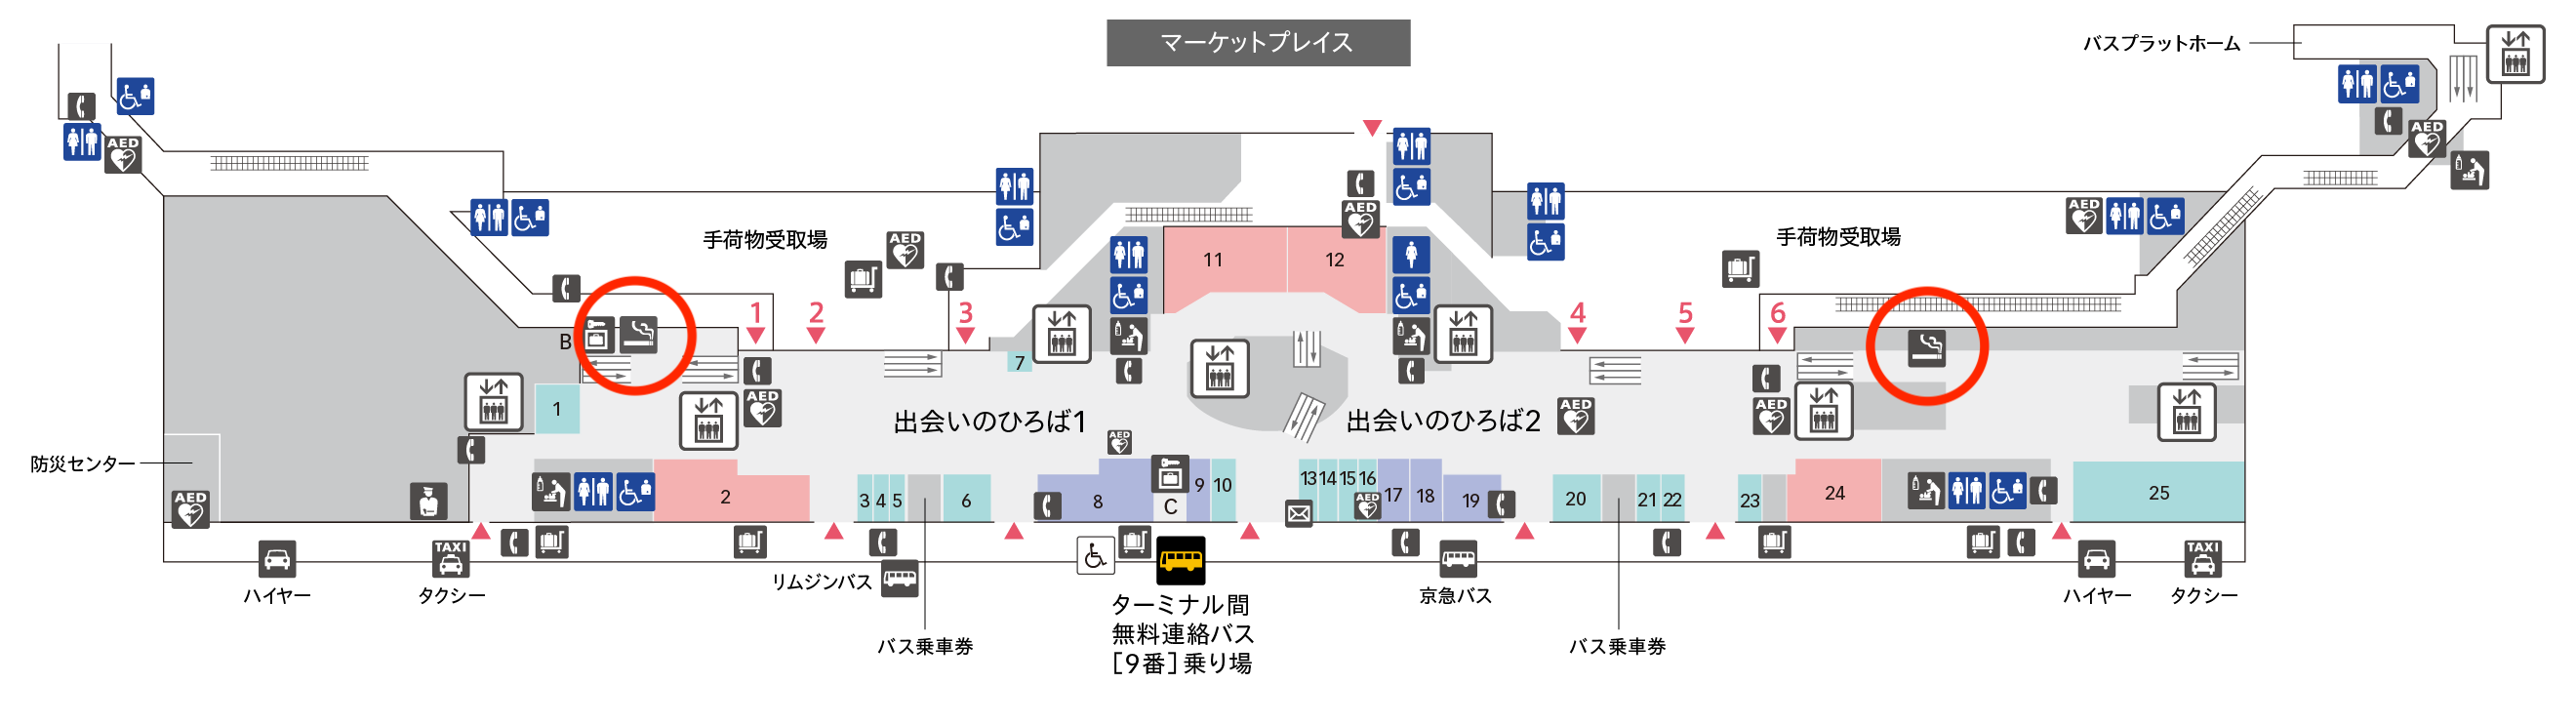 羽田空港第2ターミナル喫煙所1F